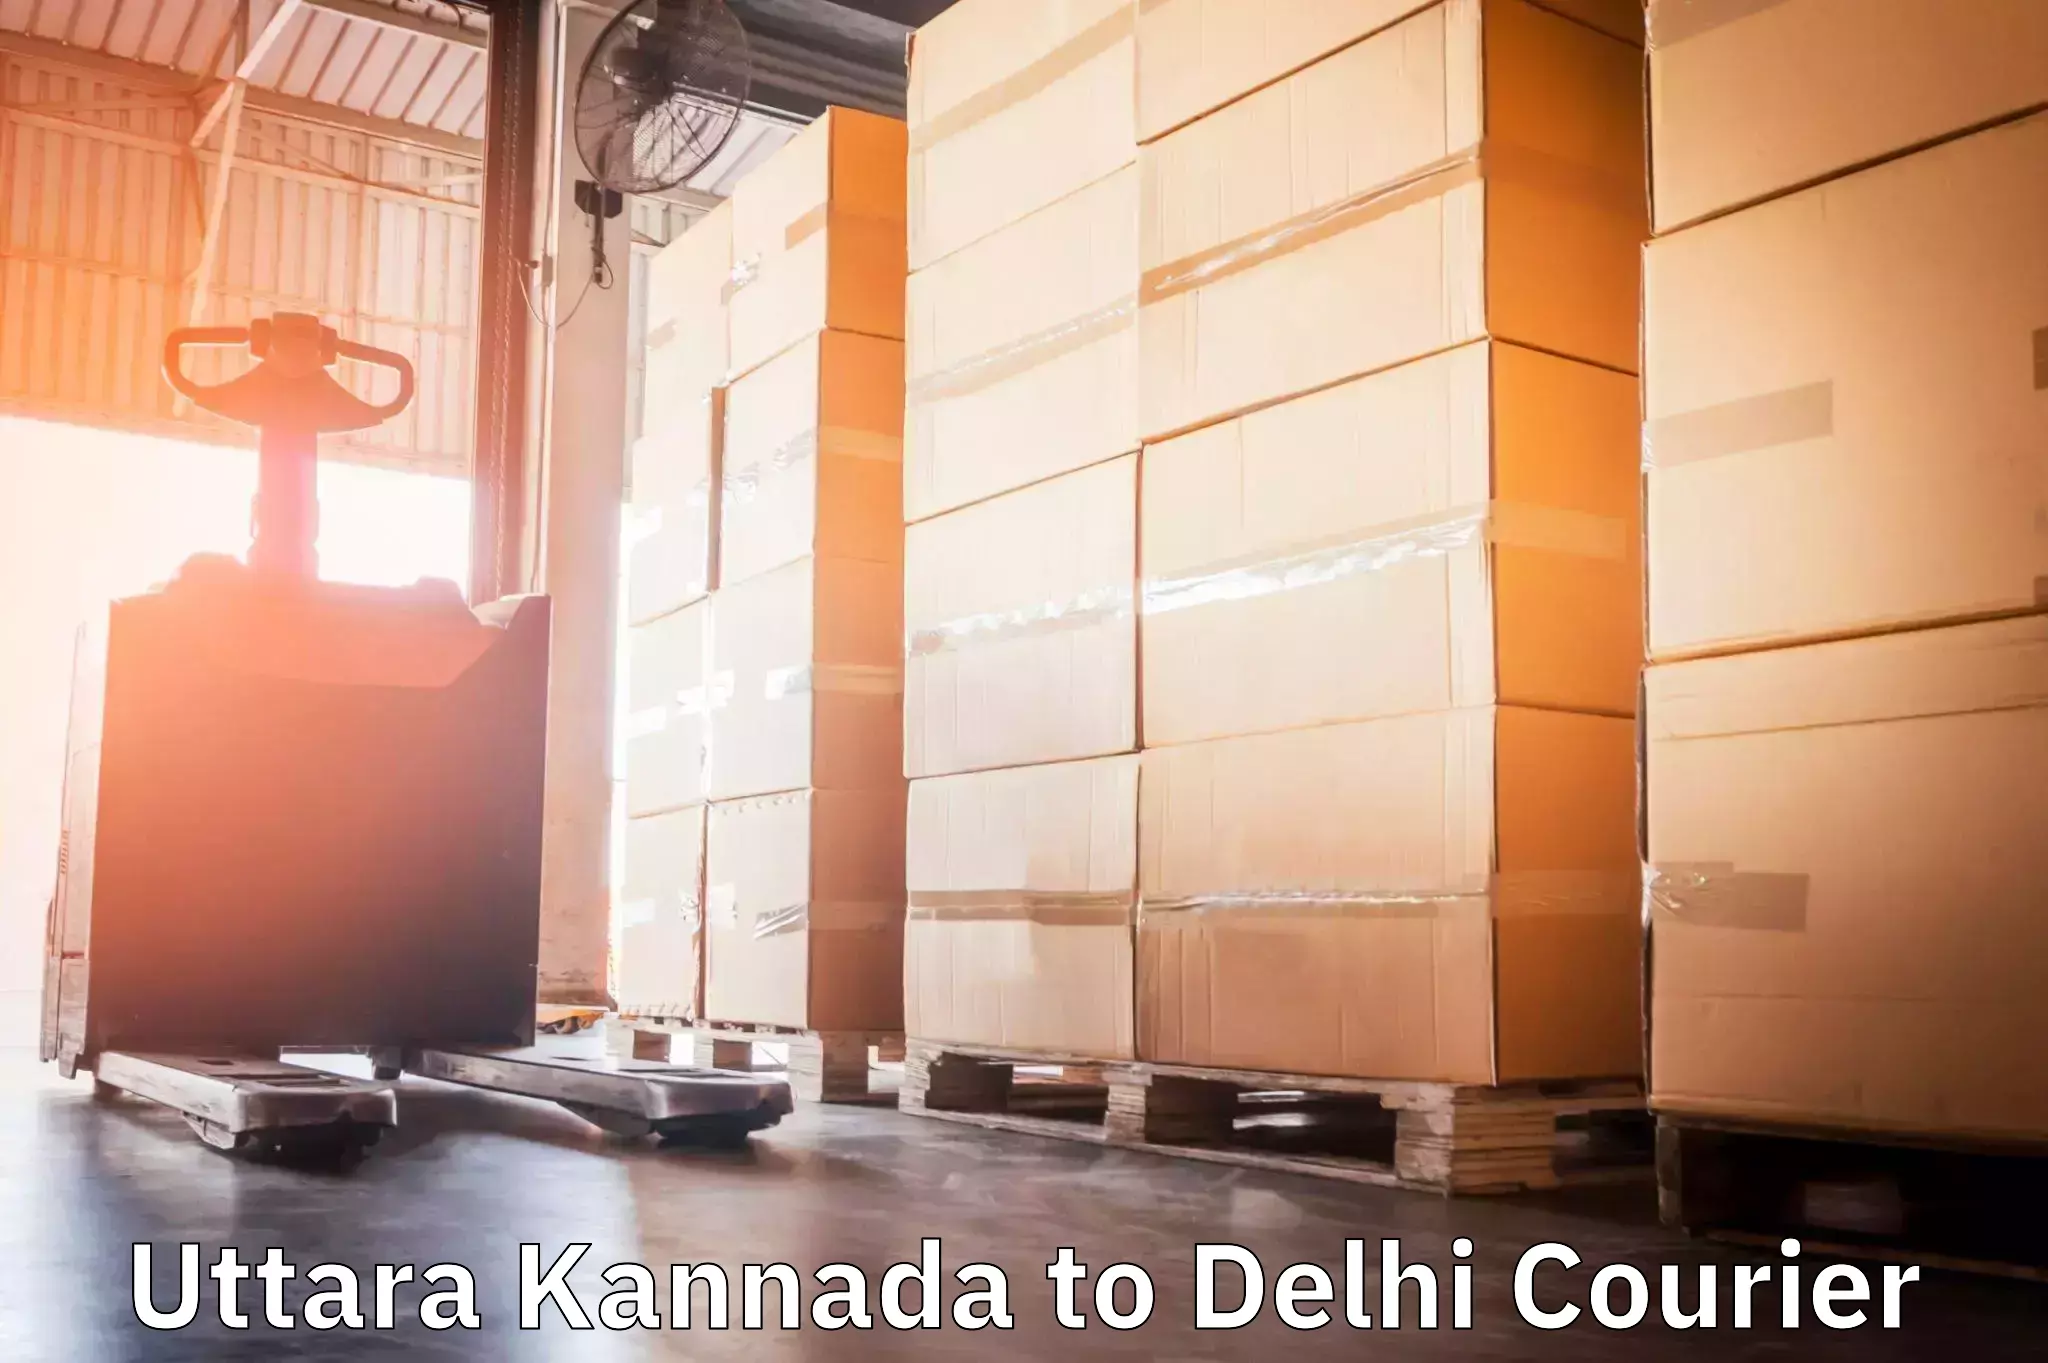 24/7 courier service in Uttara Kannada to IIT Delhi